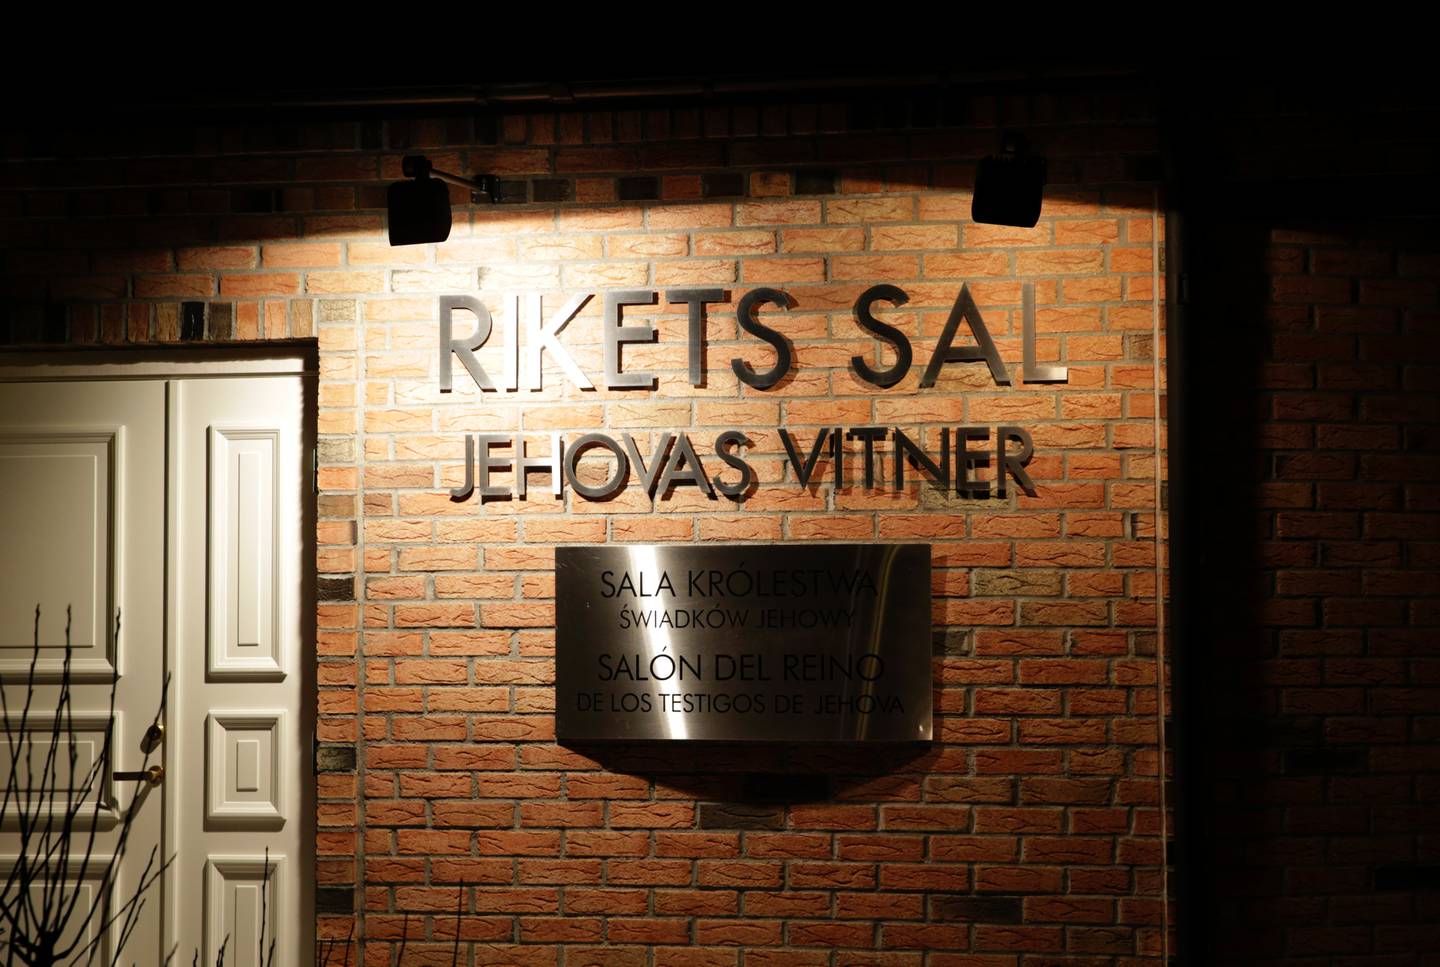 Det kristne trossamfunnet Jehovas vitner har møtelokaler flere steder i Norge, blant annet på Haugenstua i Oslo.